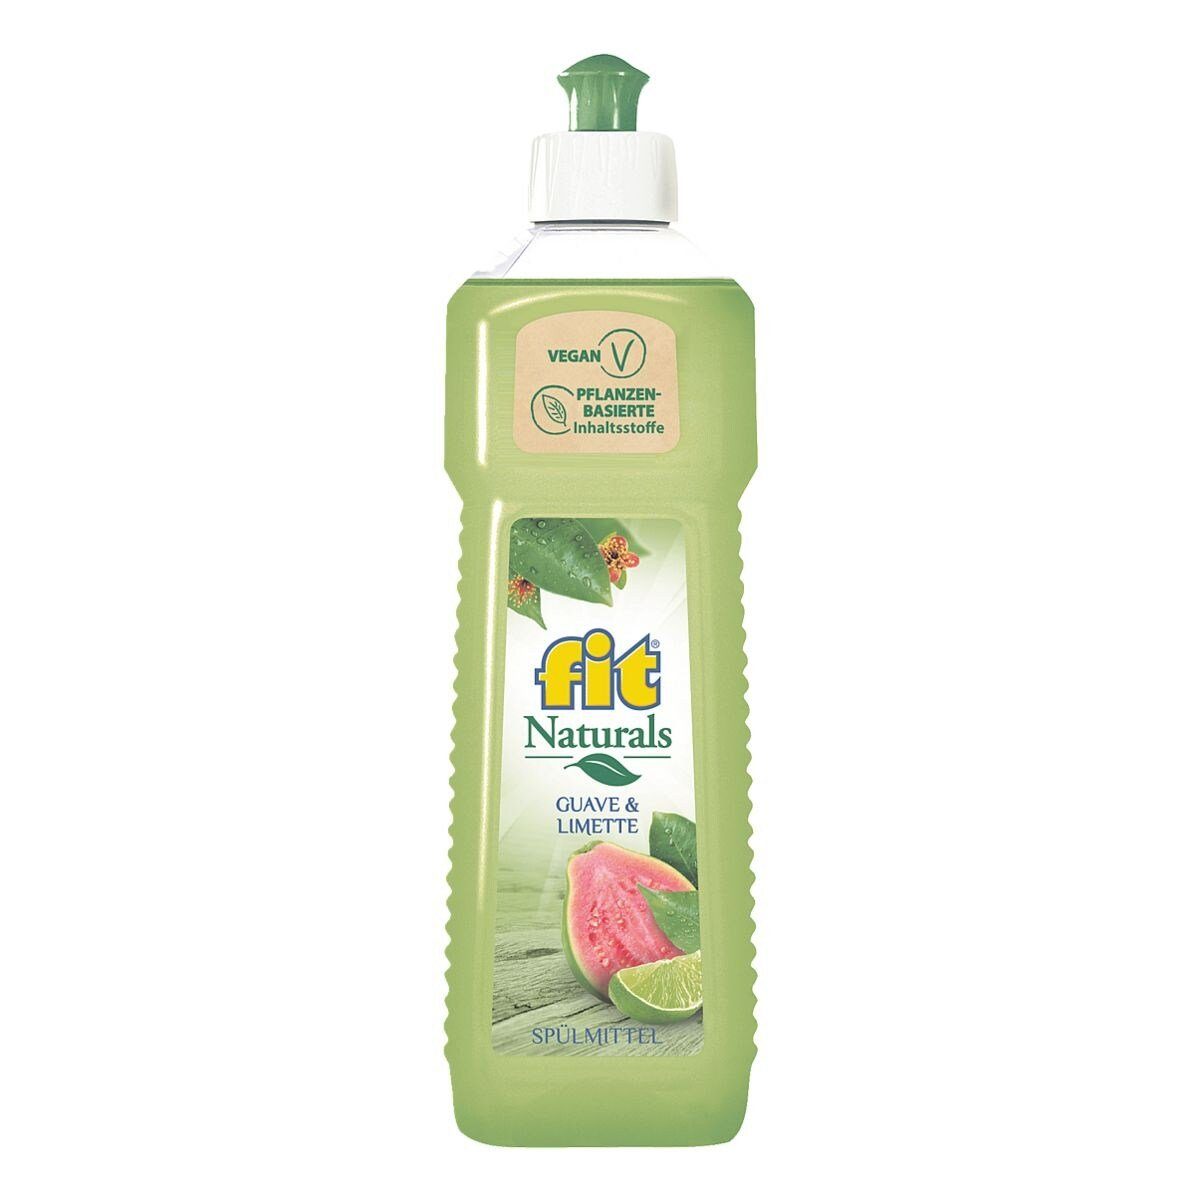 FIT GRUENEKRAFT Naturals (500 Guave pH-neutral, vegan) ml, Geschirrspülmittel & Limette hautschonend